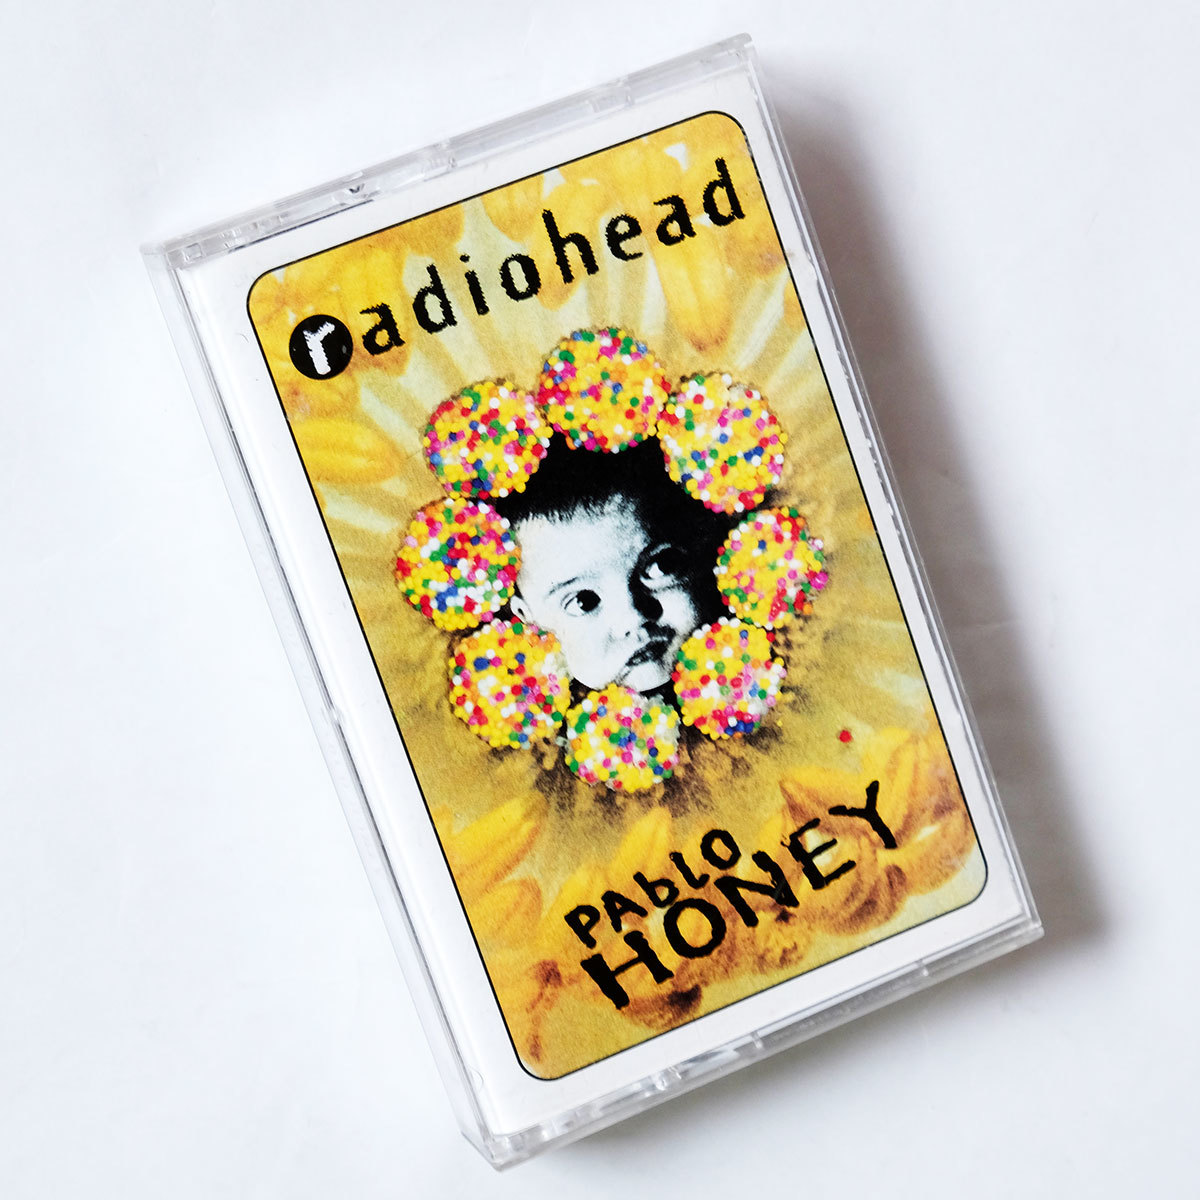 Radiohead「Pablo Honey」カセットテープ レディオヘッド LP - 洋楽